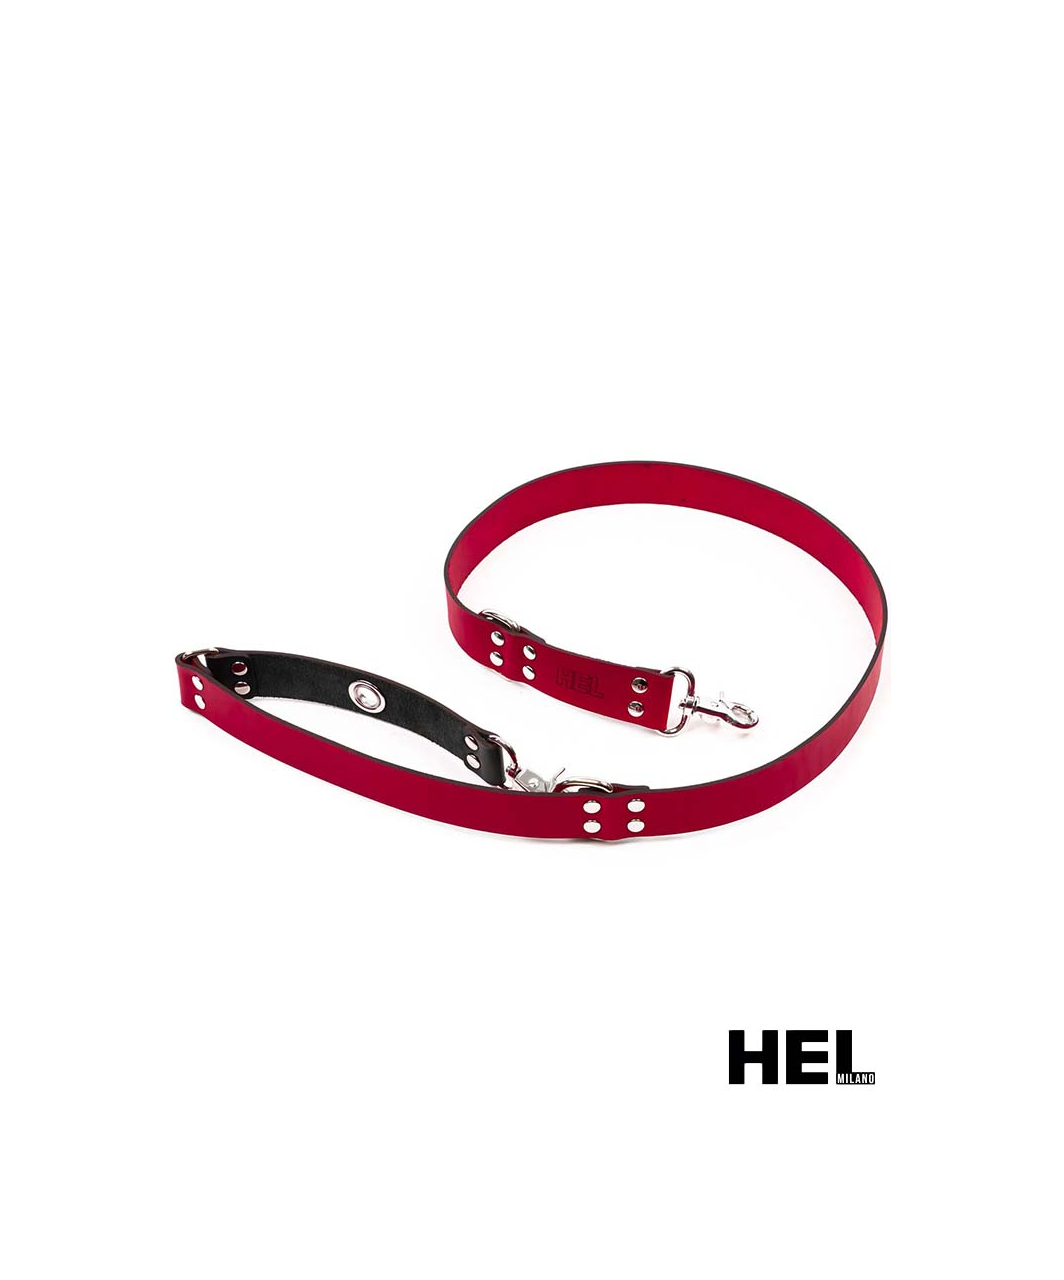 HEL Milano Adjustable Leather Leash